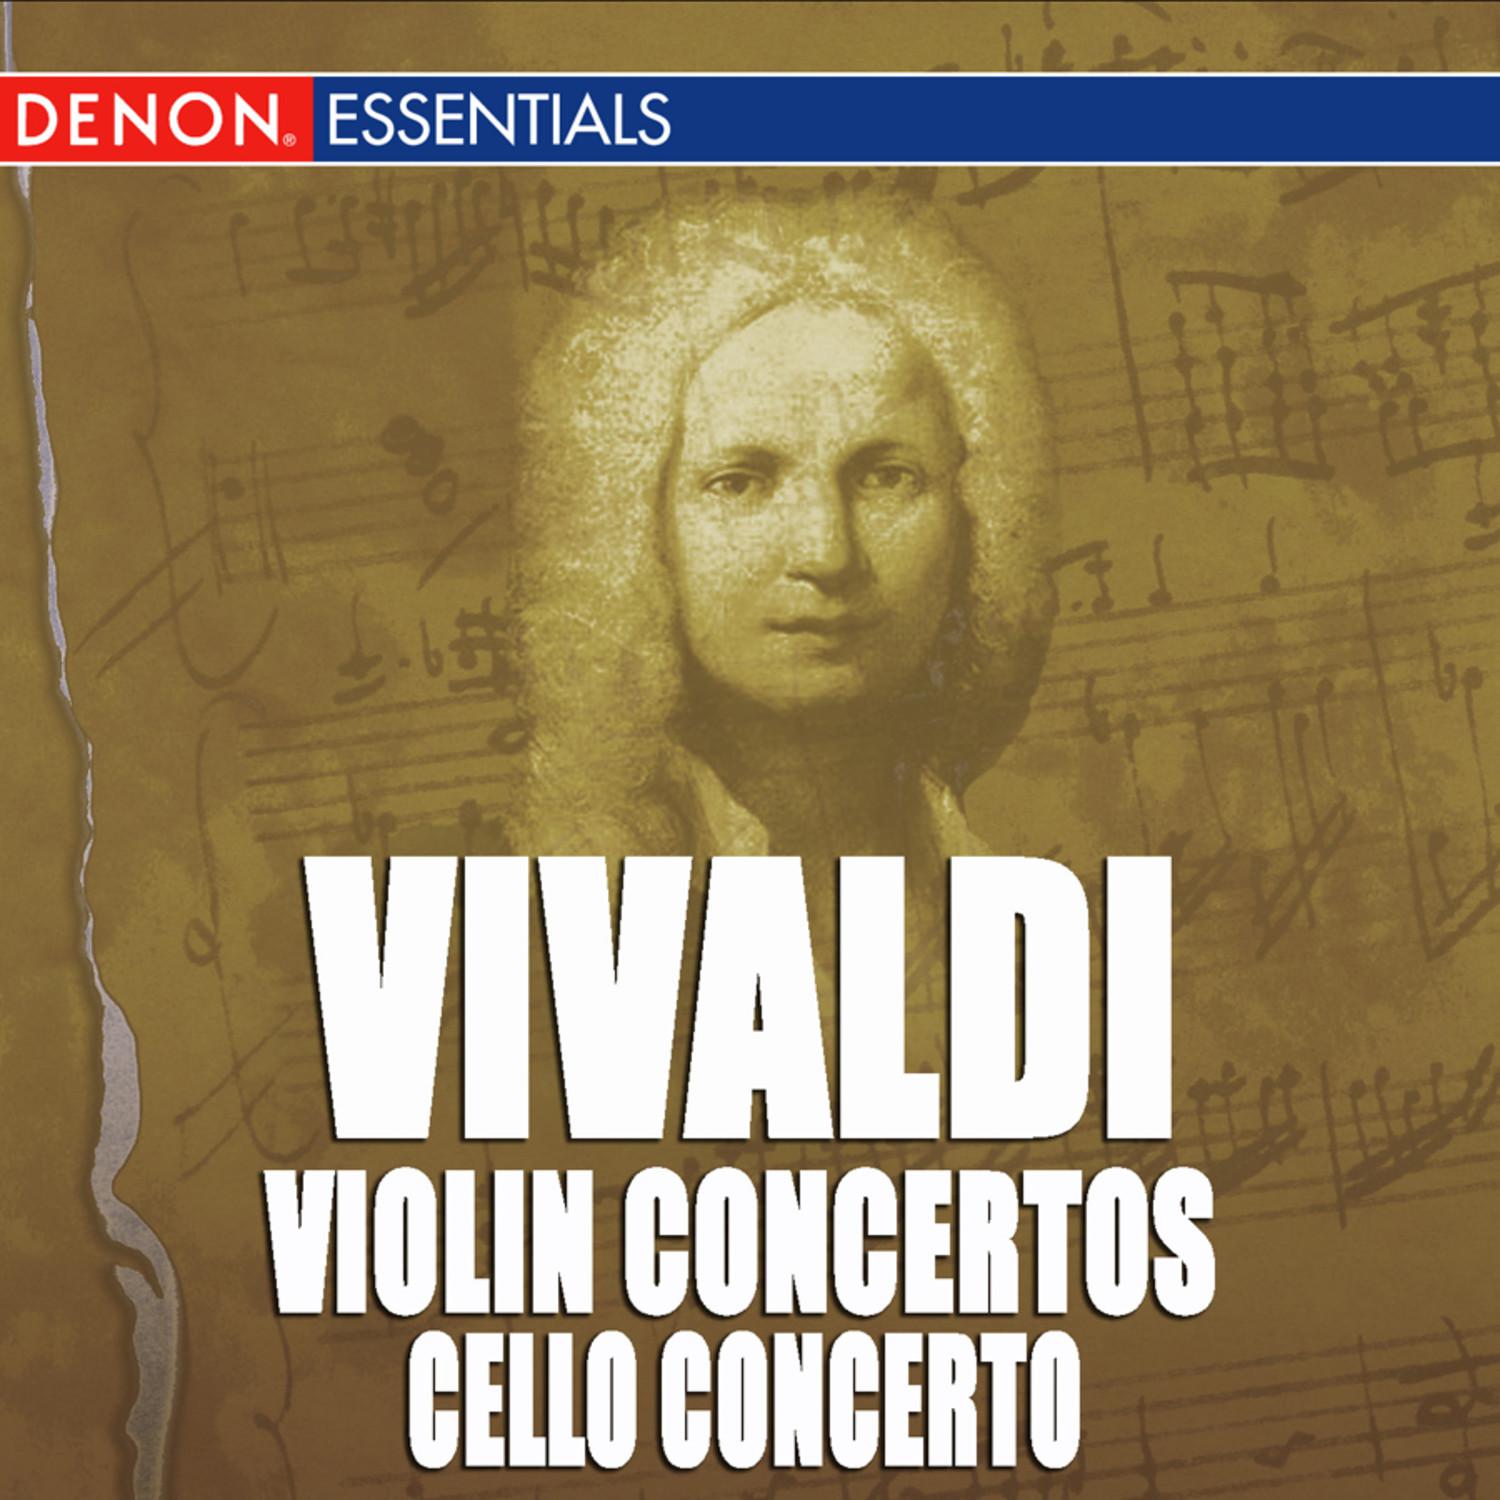 Concerto for Cello, Strings & Bc No. 20 in D Major, RV 404: I. Allegro